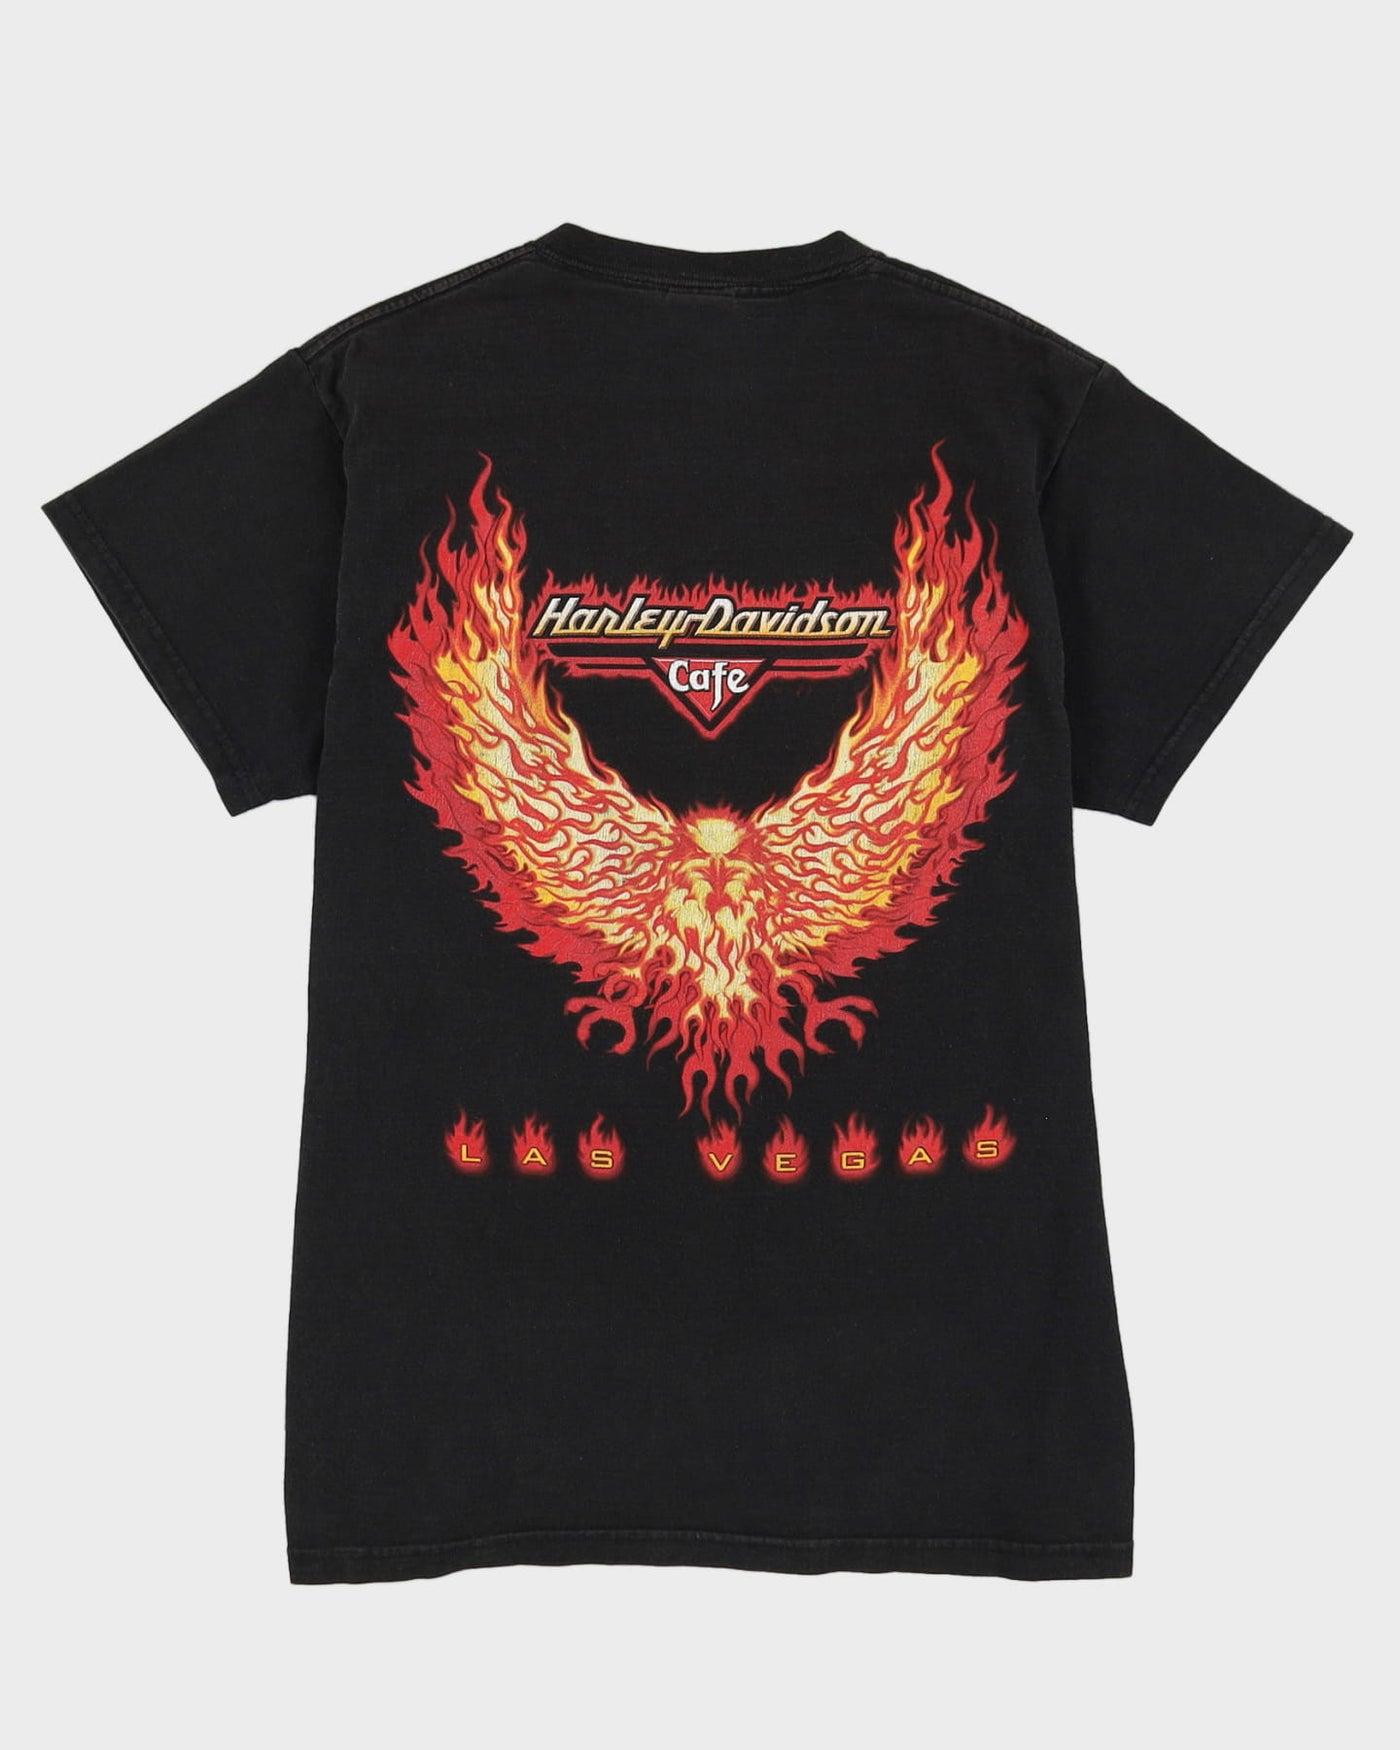 Harley Davidson Las Vegas Graphic T-Shirt - M